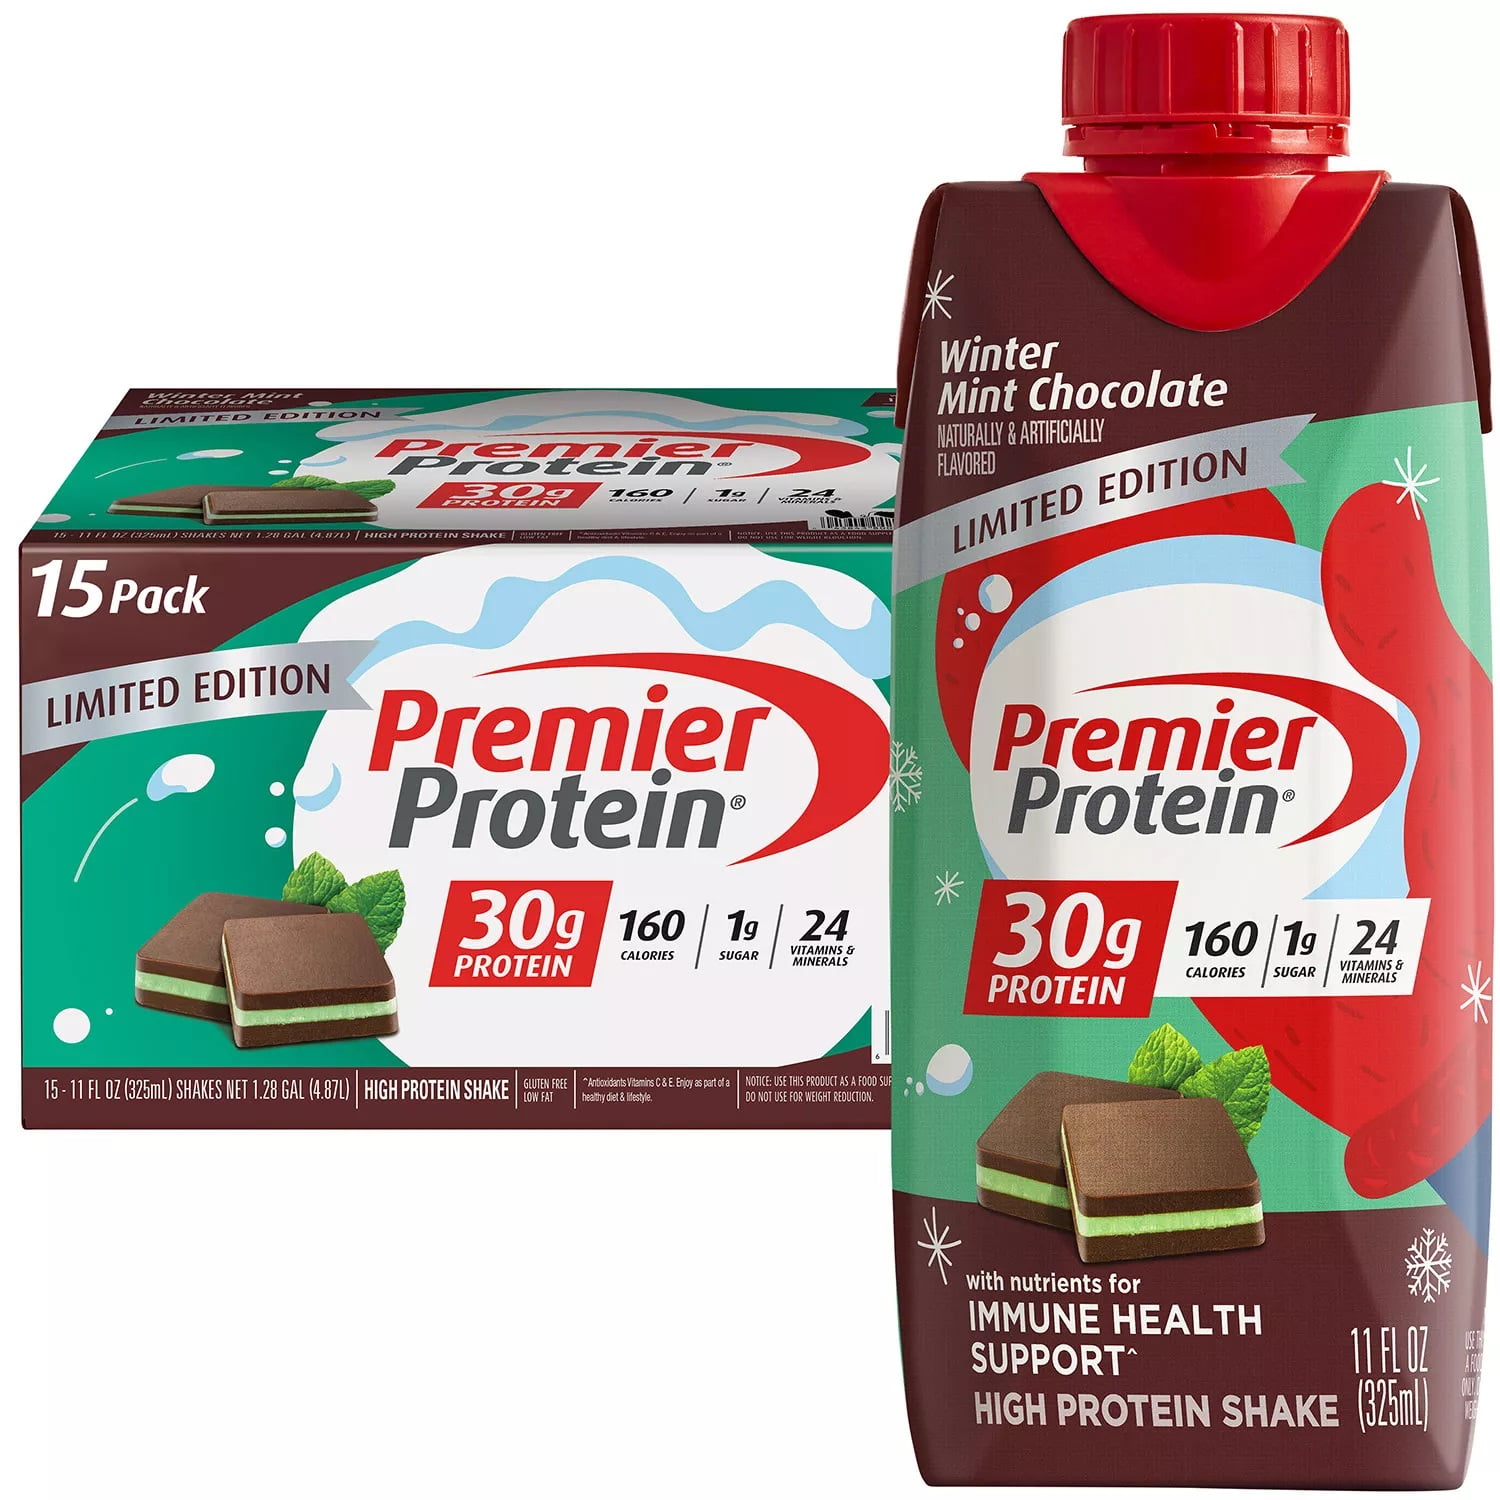 Premier Protein High Protein Shake Winter Mint Chocolate 11 Fl Oz